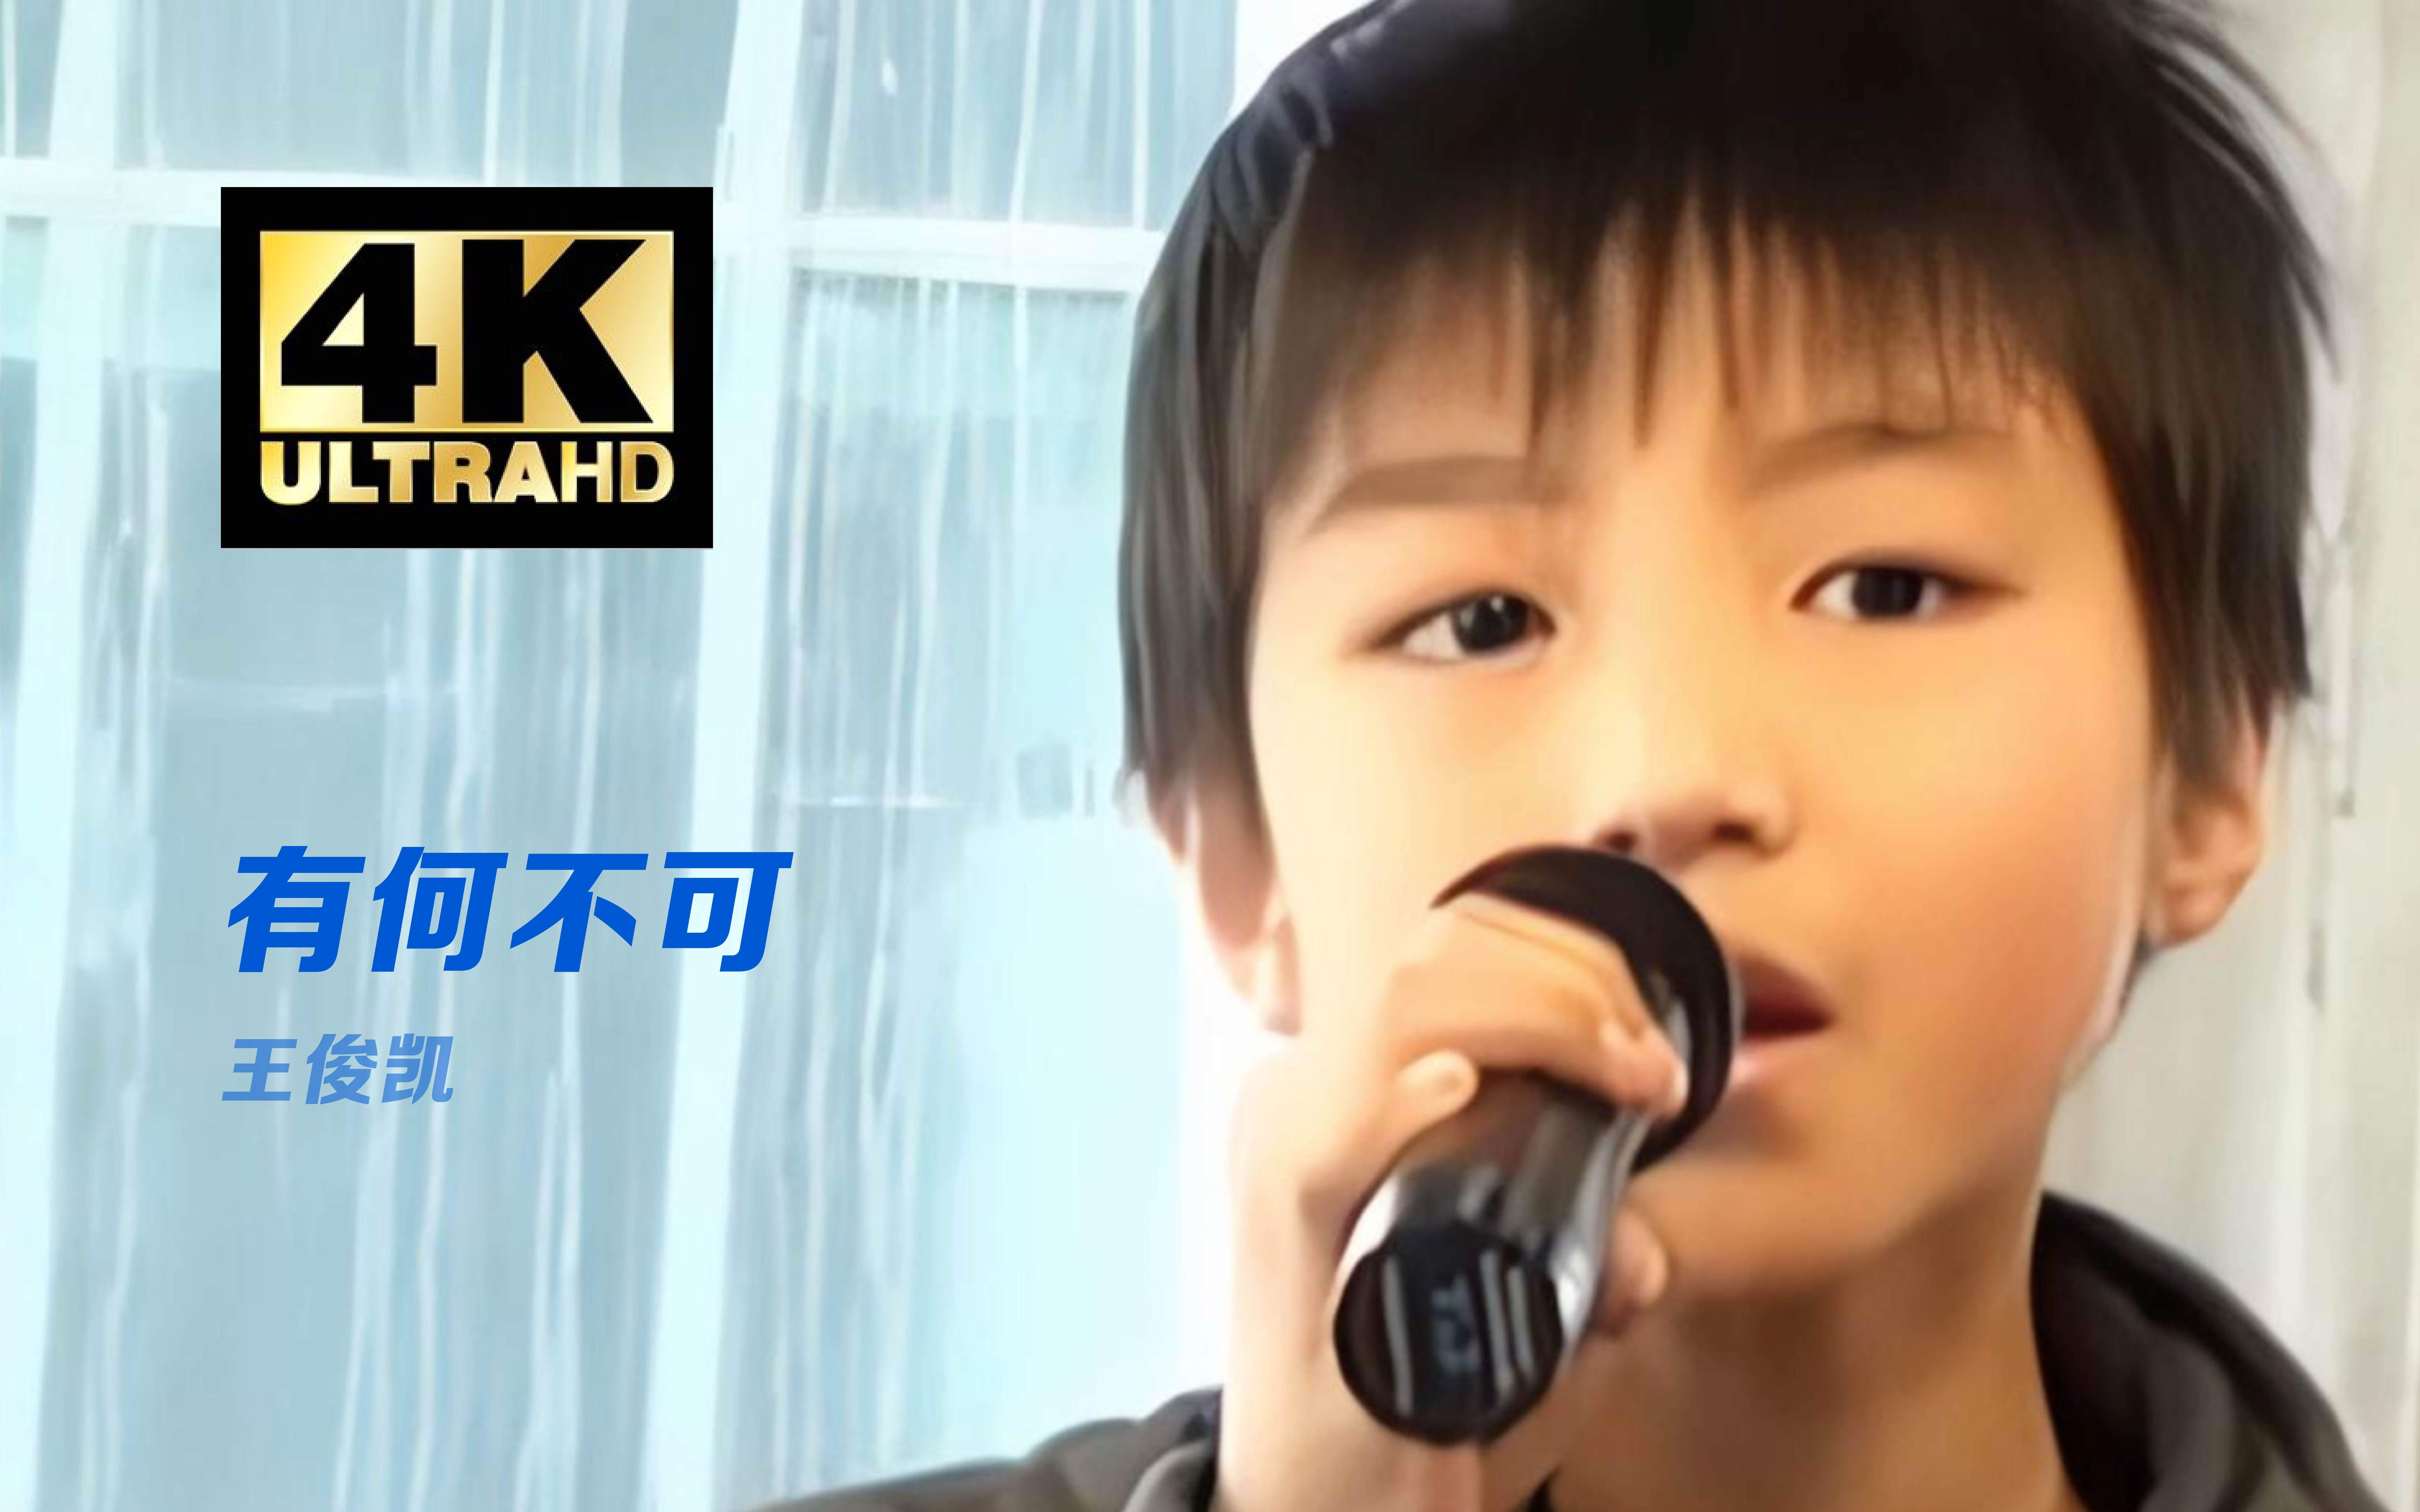 【4K超高清修复】当时才11岁的小朋友啊，稚嫩童声太可爱了！！︱20110326王俊凯试唱训练《有何不可》翻唱